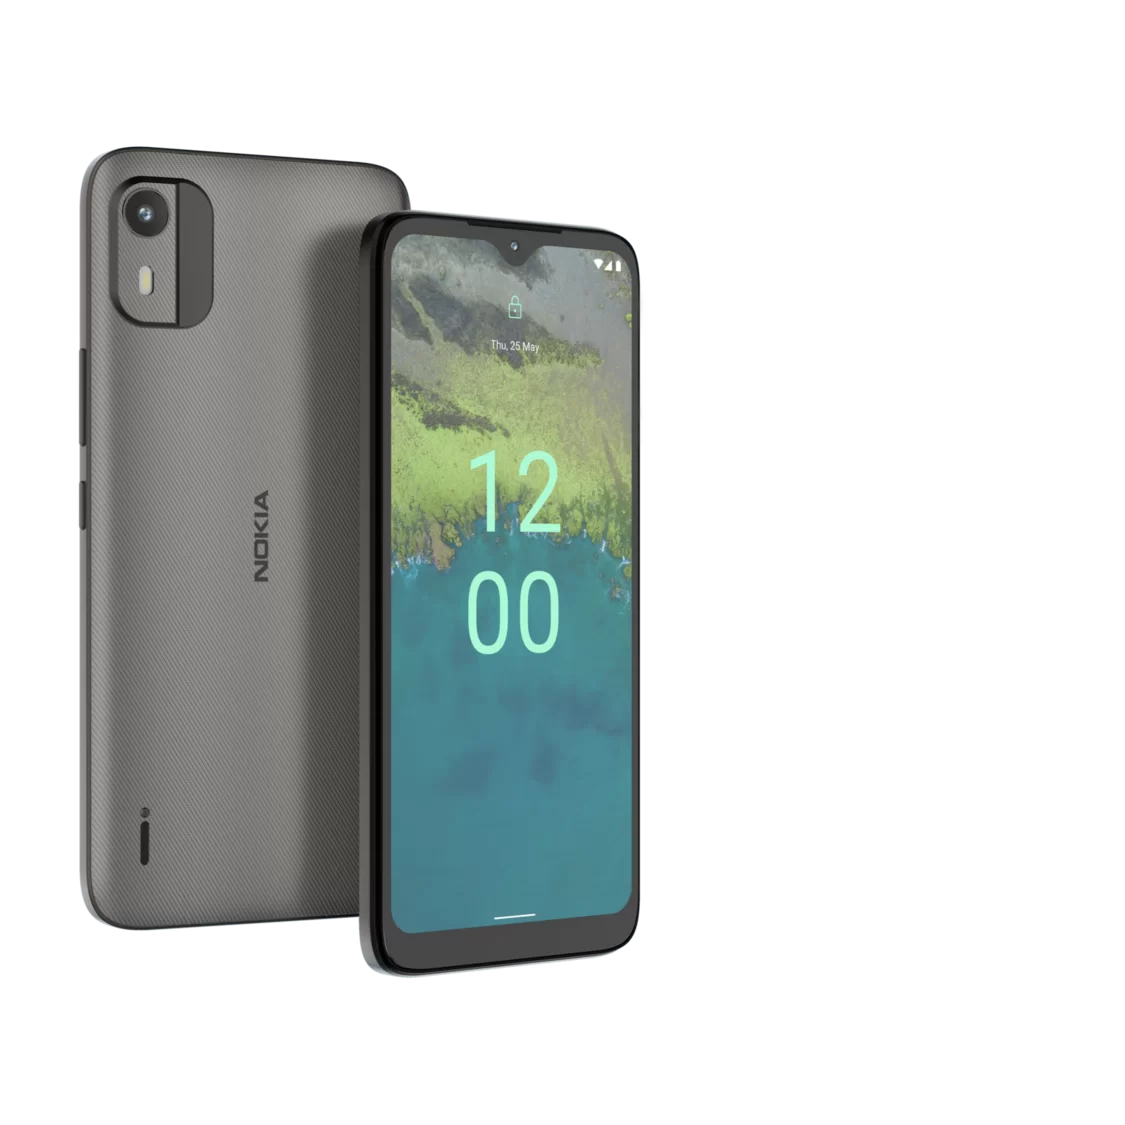 Nokia C12 02 | Nokia C12 | Nokia C12 ตระกูล C ซีรีส์ พร้อมขาย 2 ก.พ.นี้ เพียง 2,990 บาท